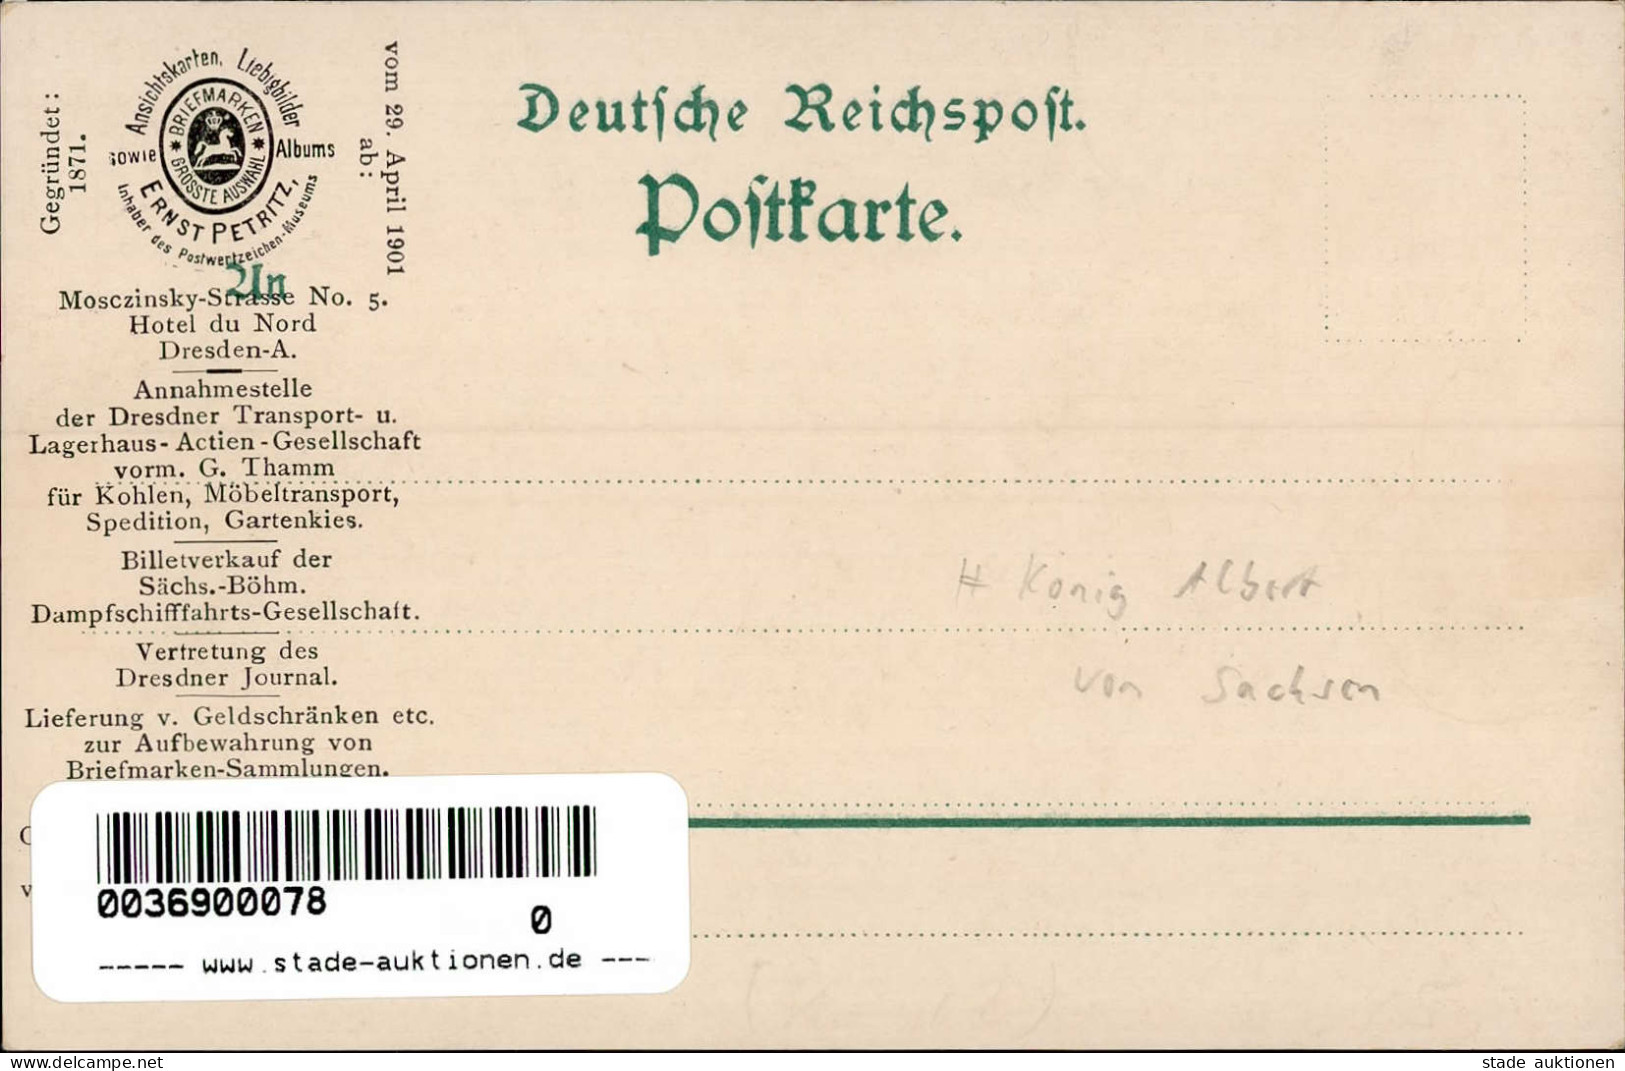 Adel Sachsen König Albert Jubiläumskarte 1898 I-II - Familles Royales